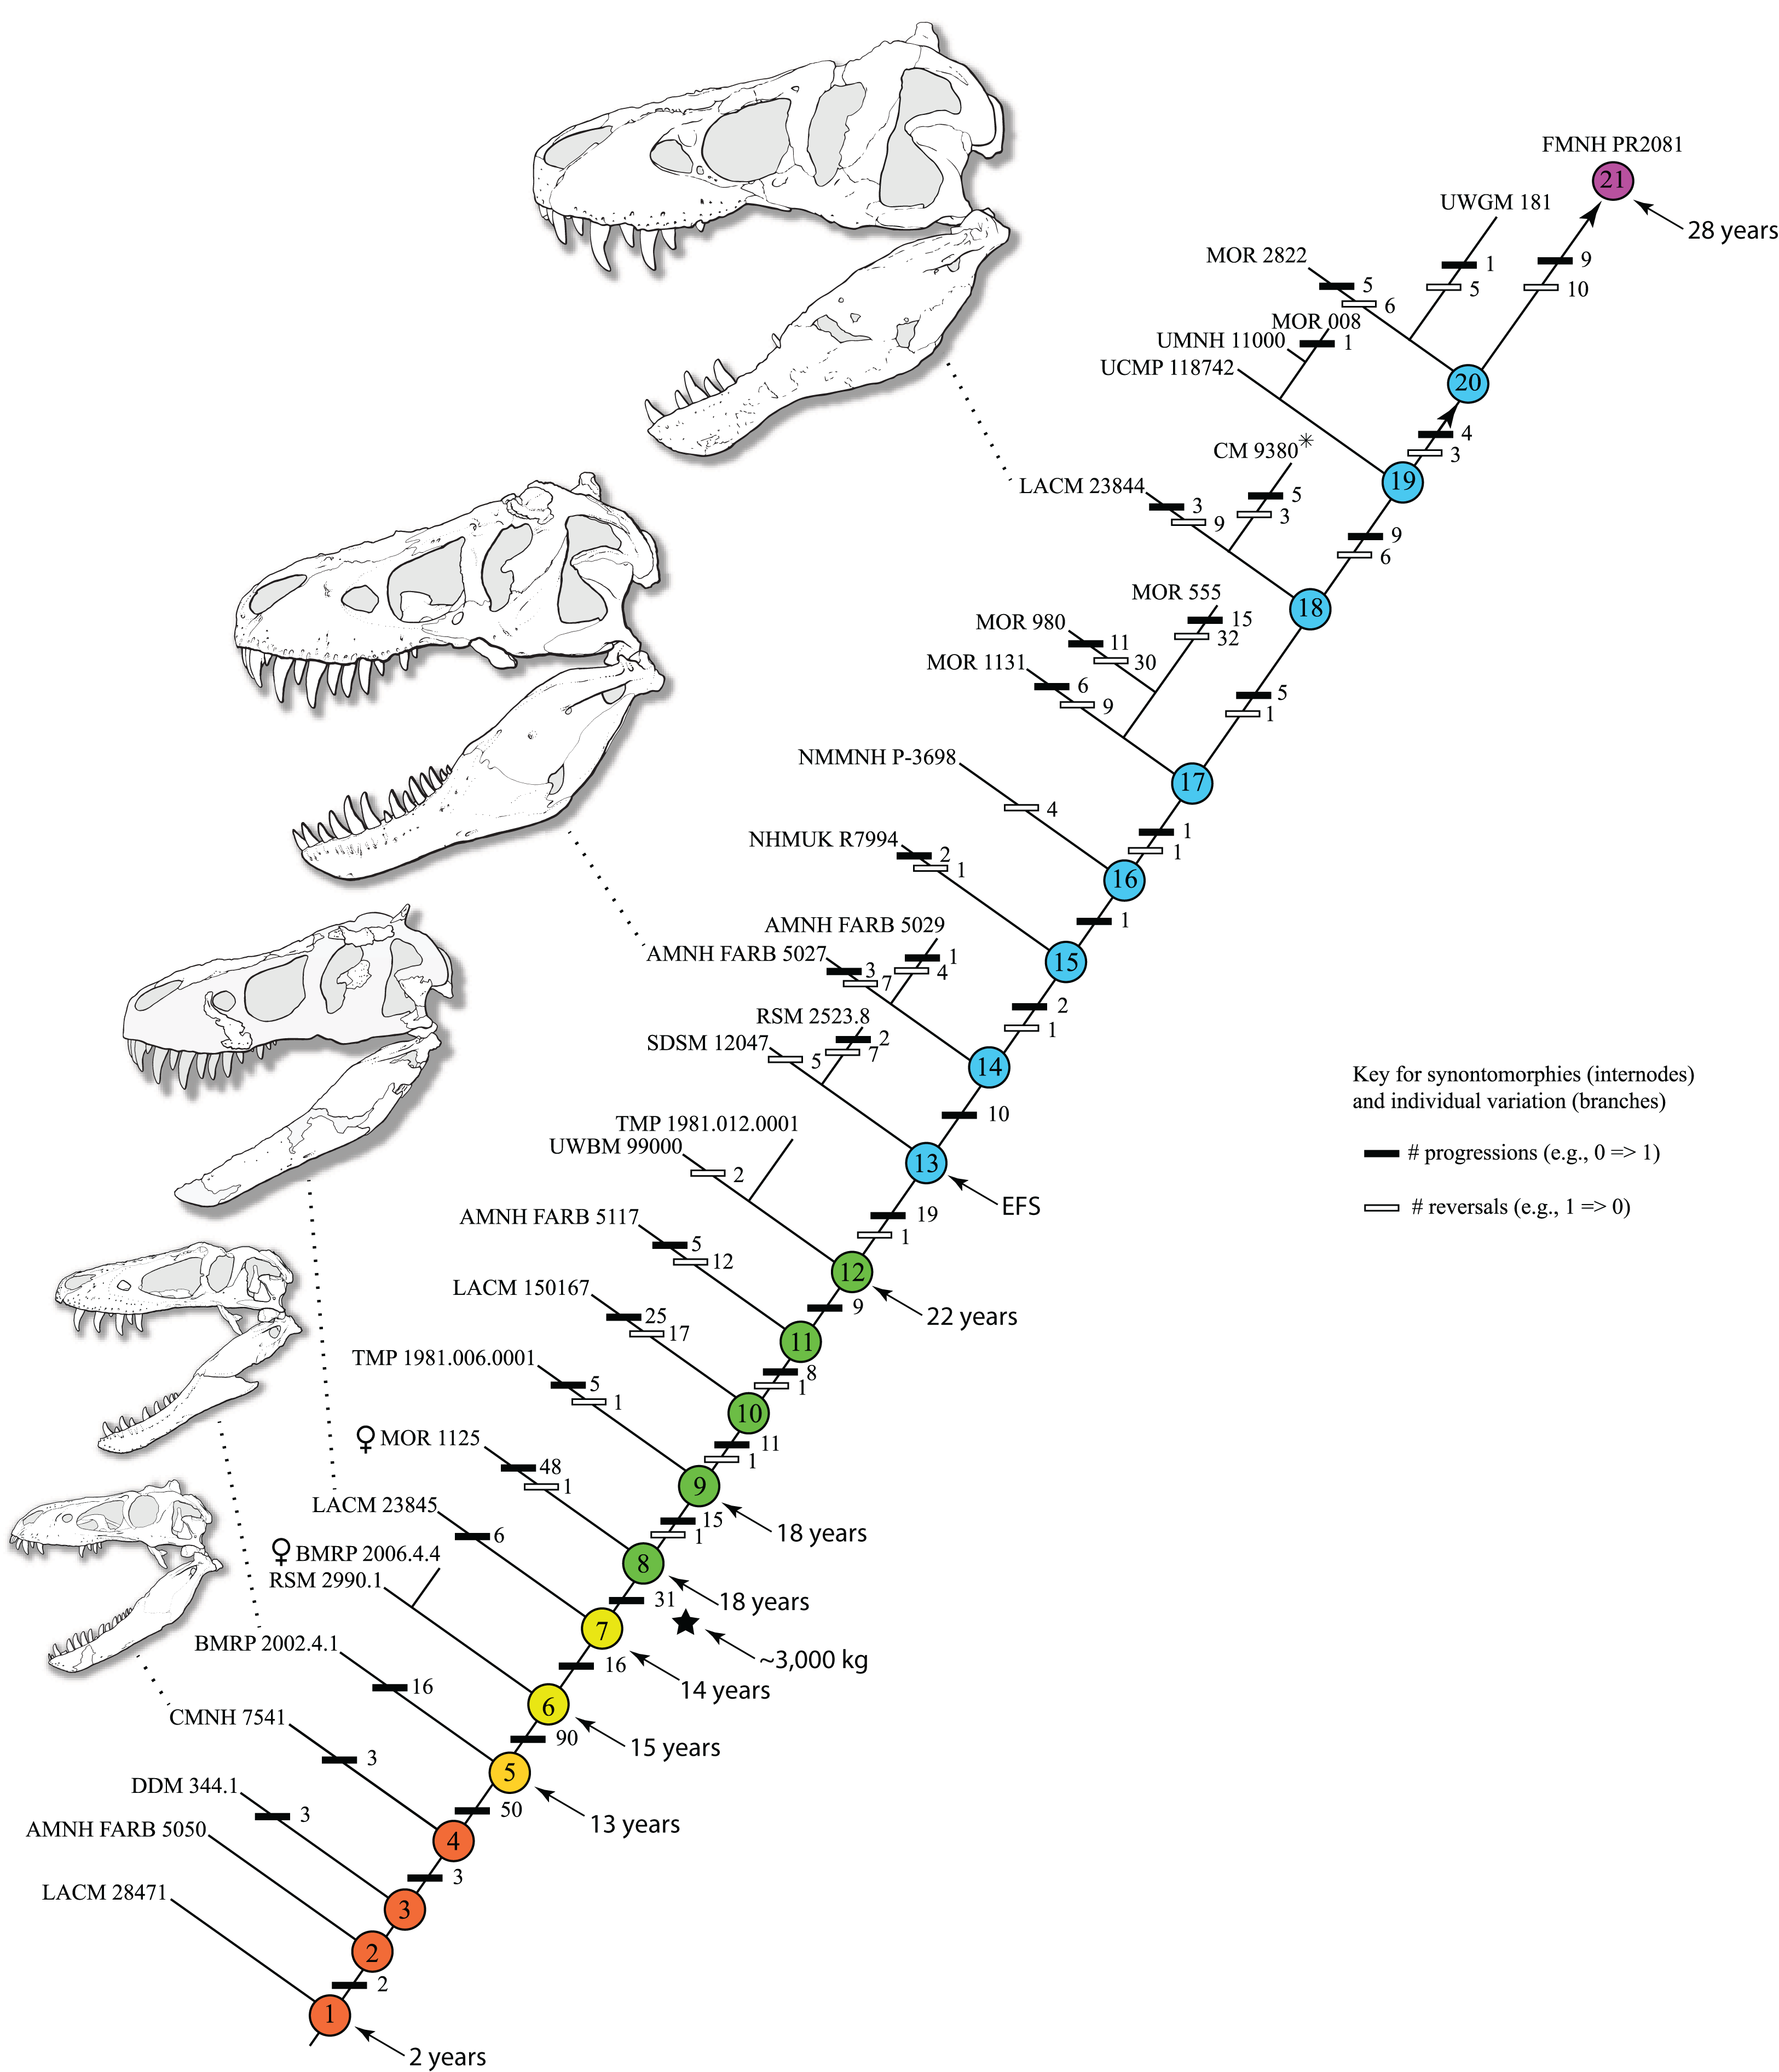 Diagram zobrazující lebky několika exemplářů druhu T. rex z různých ontogenetických stadií jeho vývoje. Slavná „Sue“ byla s 28 roky věku nejstarším s jistotou známým exemplářem, ještě větší „Scotty“ byl naopak jedním z nejmladších dospělců. Celková v